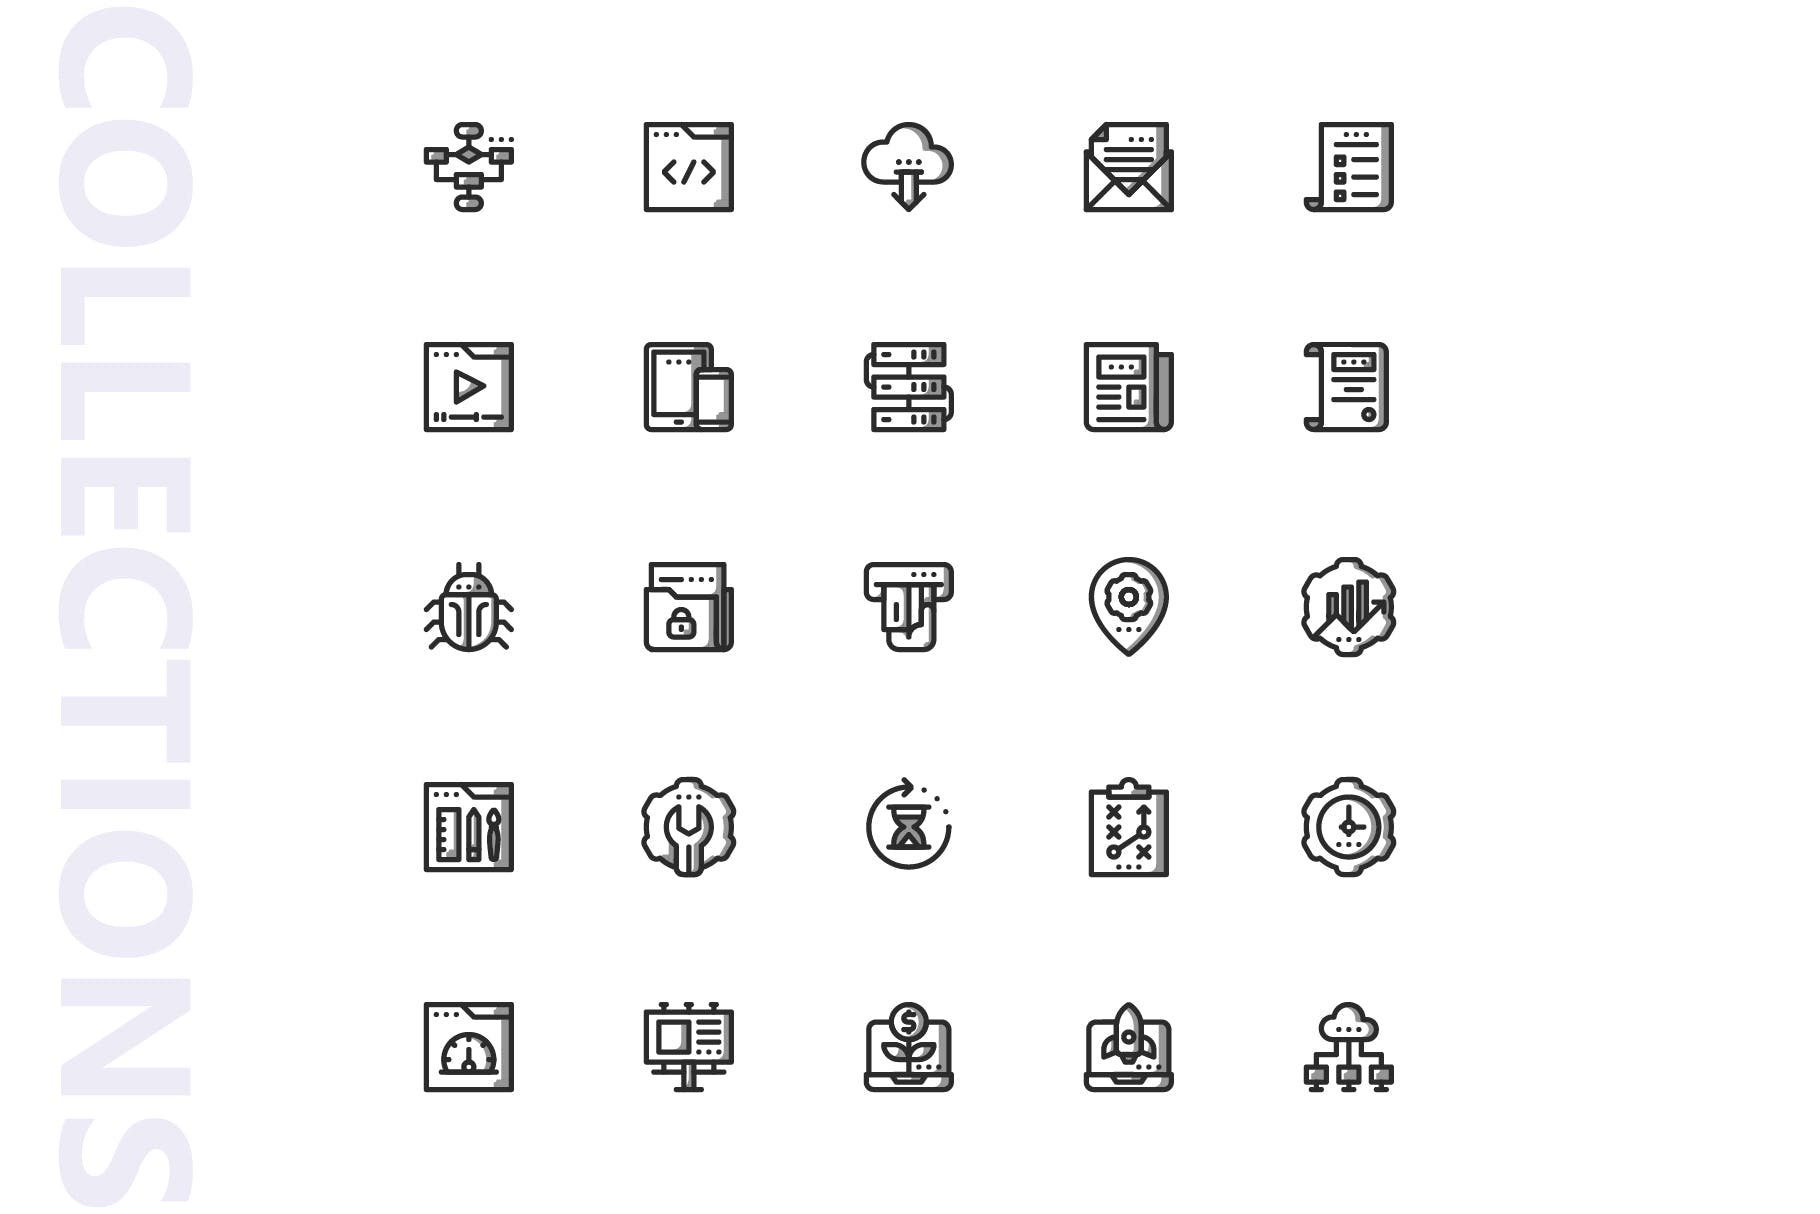 25枚SEO搜索引擎优化营销矢量阴影16设计素材网精选图标v1 SEO Marketing Shady Icons插图(3)